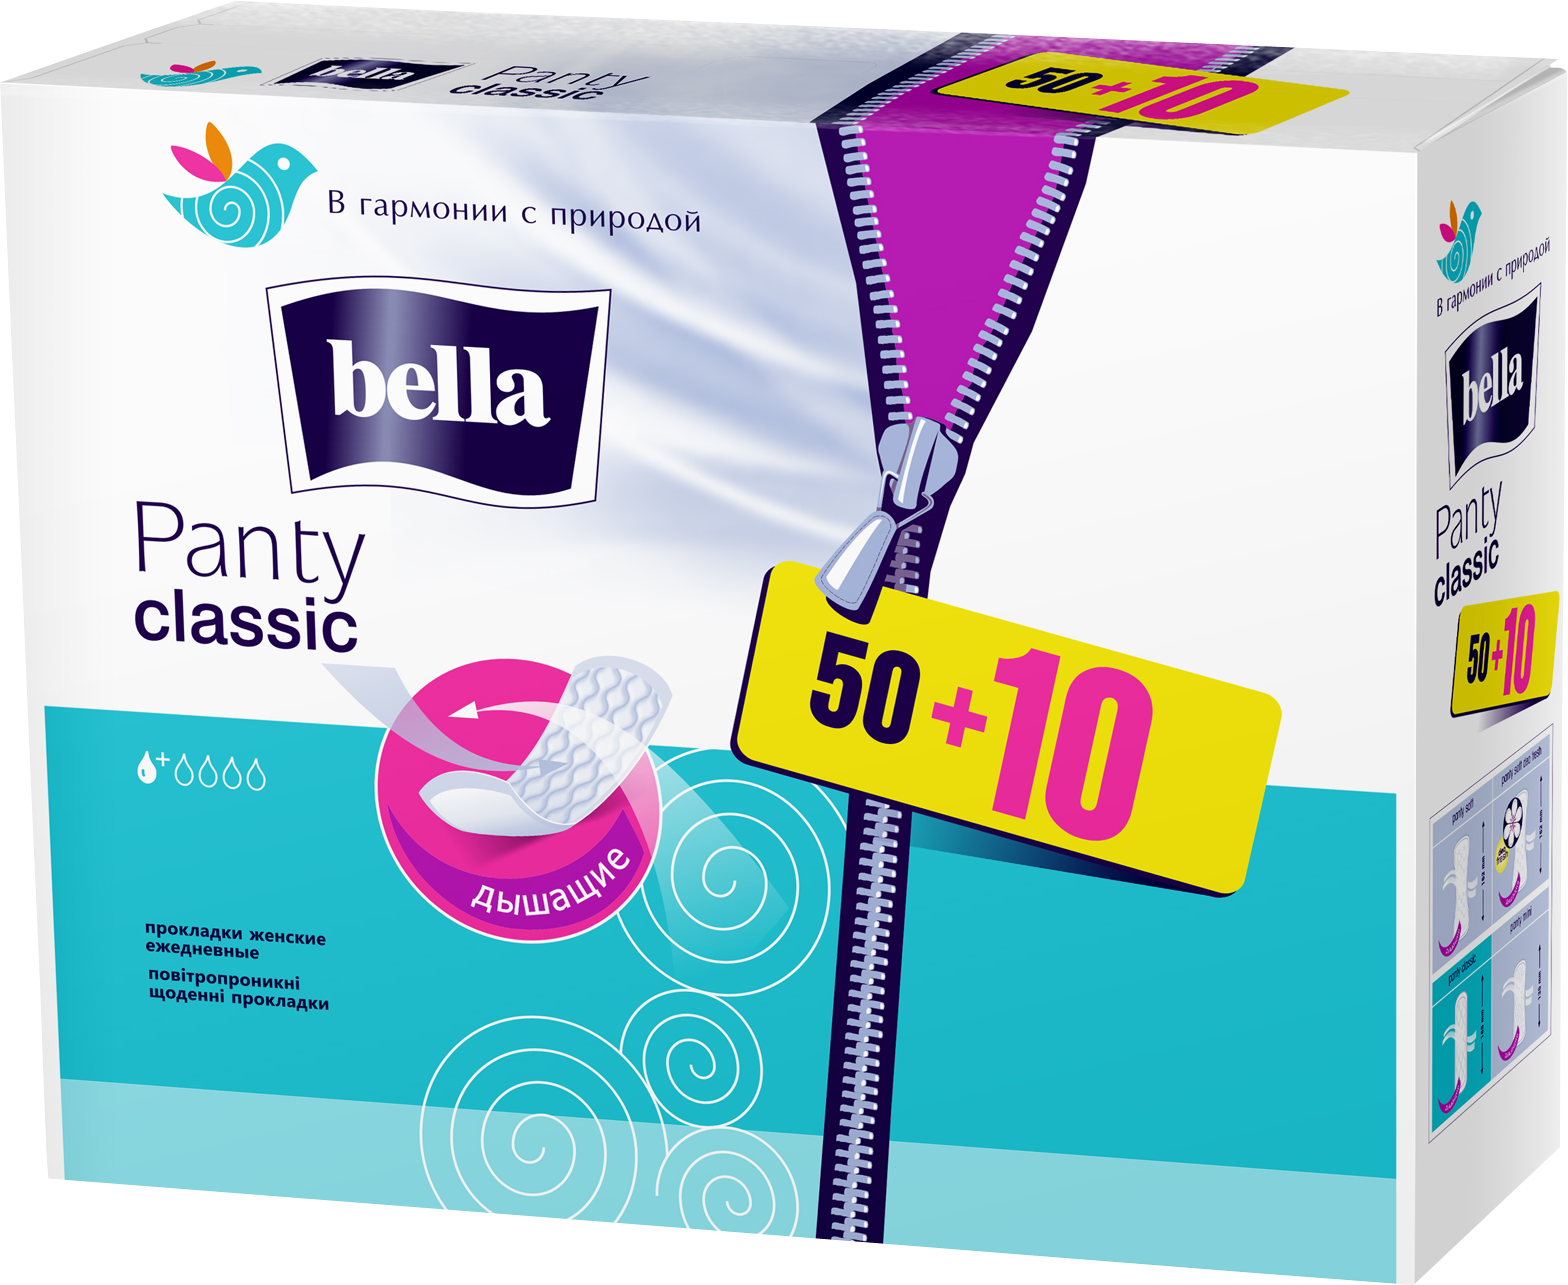 Ежедневные прокладки Bella Panty Classic, 50+10 шт. - фото 1